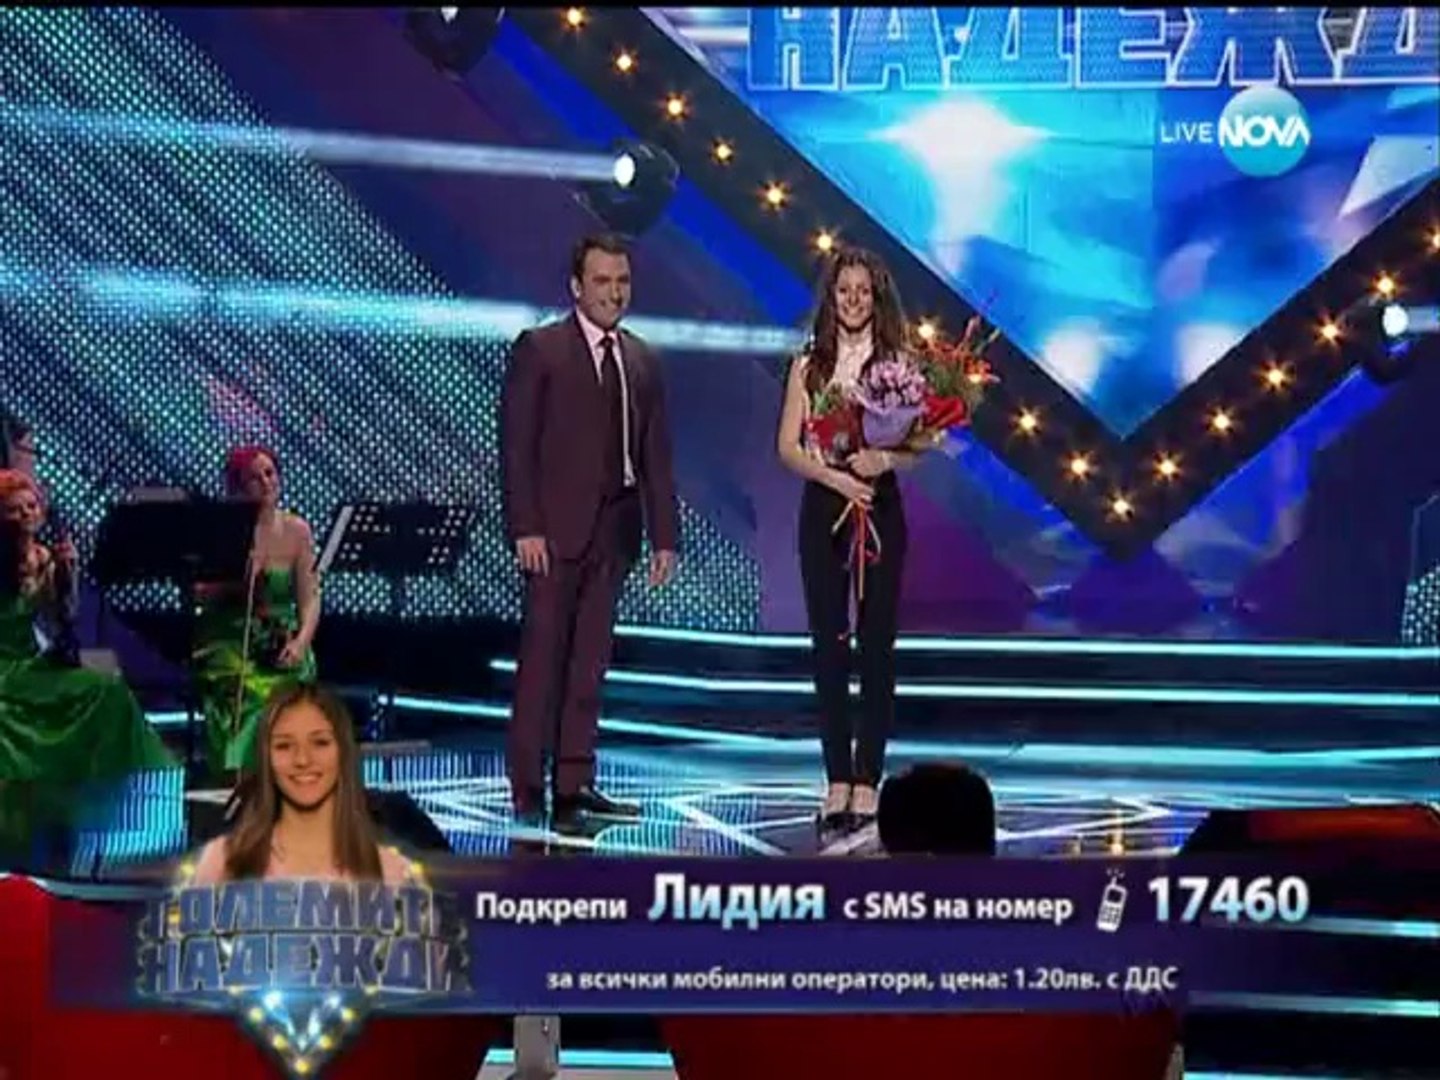 Eurovision is in Bulgaria - Lidia Stamatova - video Dailymotion